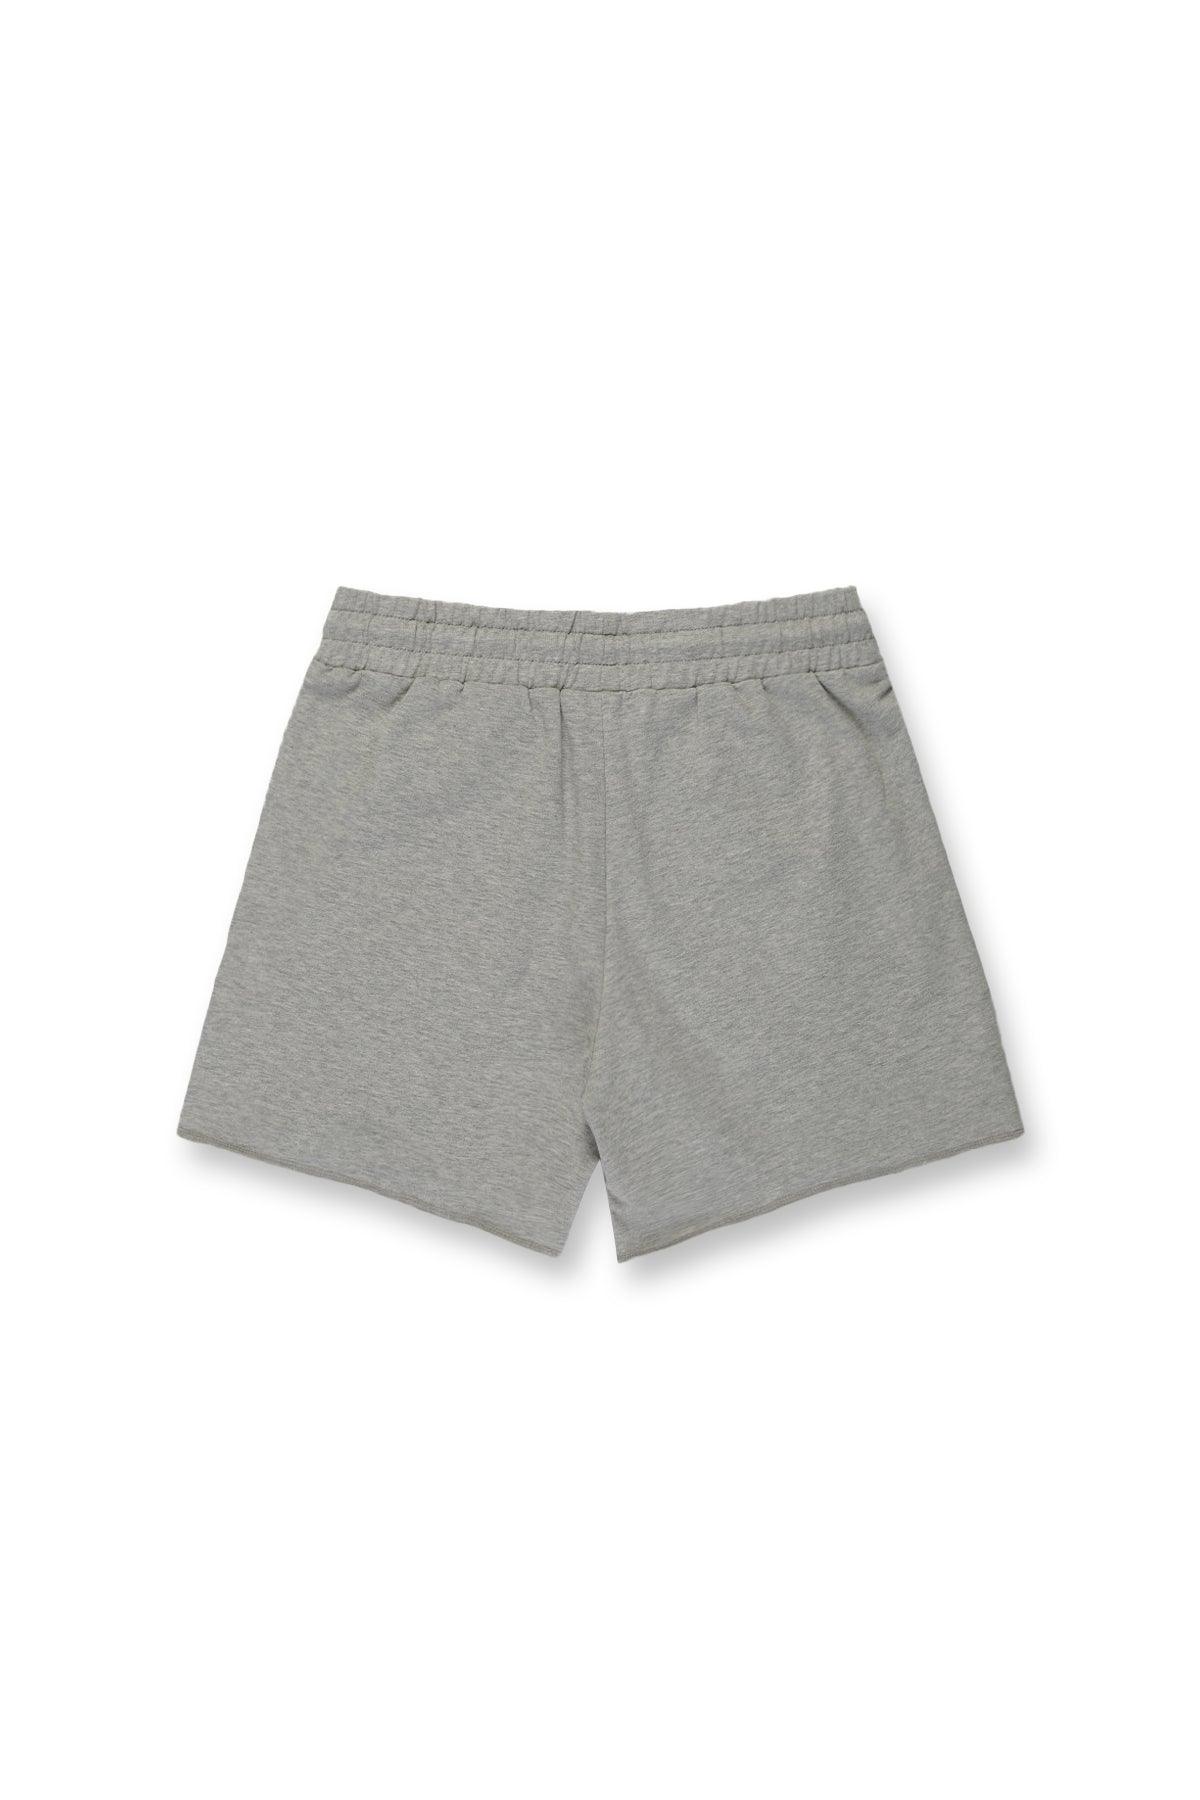 Motion 5'' Varsity Sweat Shorts - Light Gray - Jed North Canada